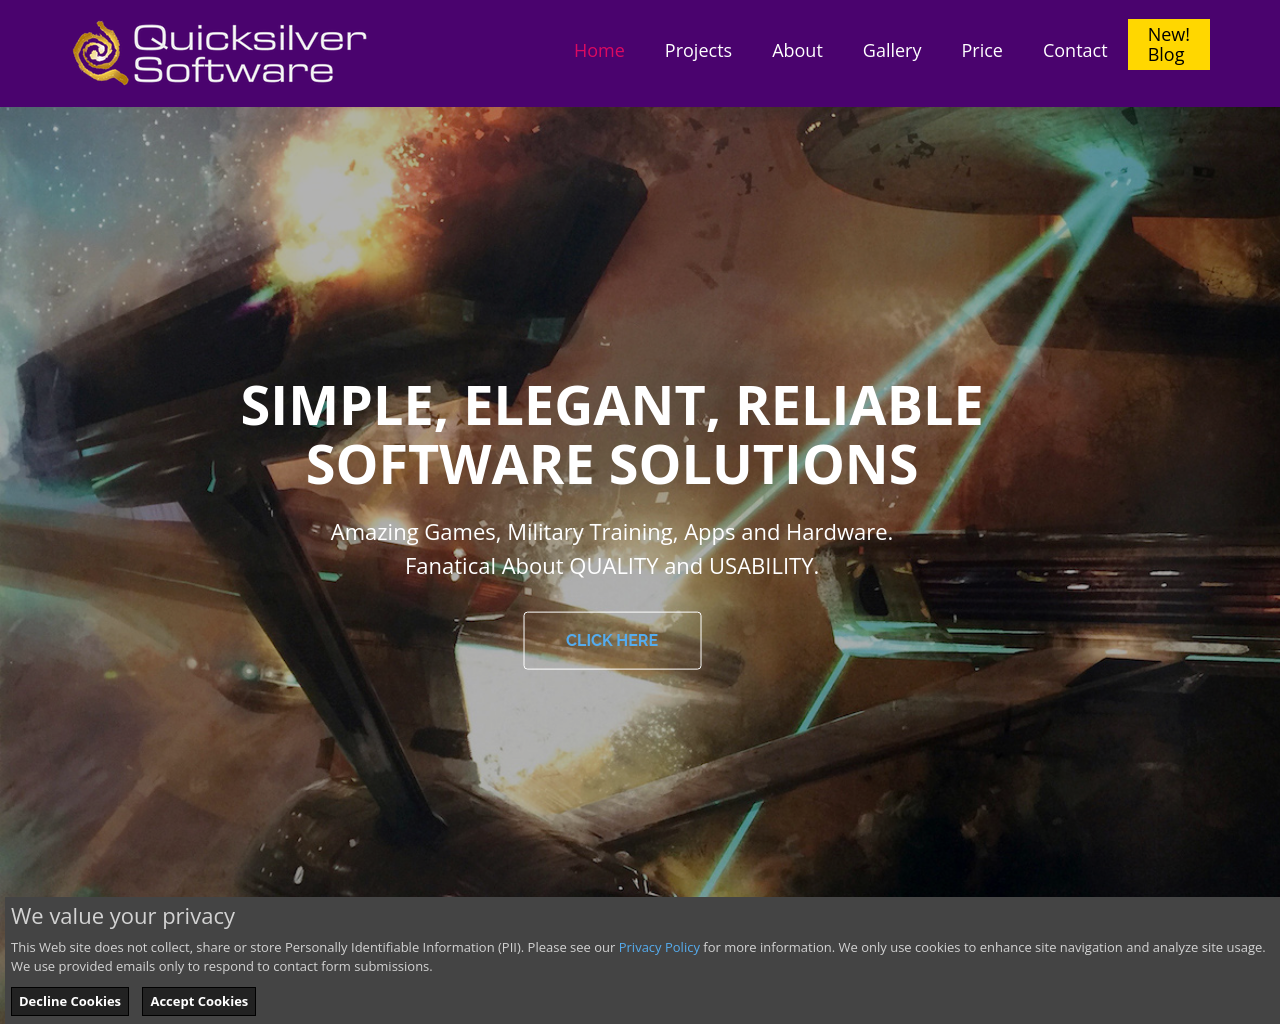 quicksilver.com